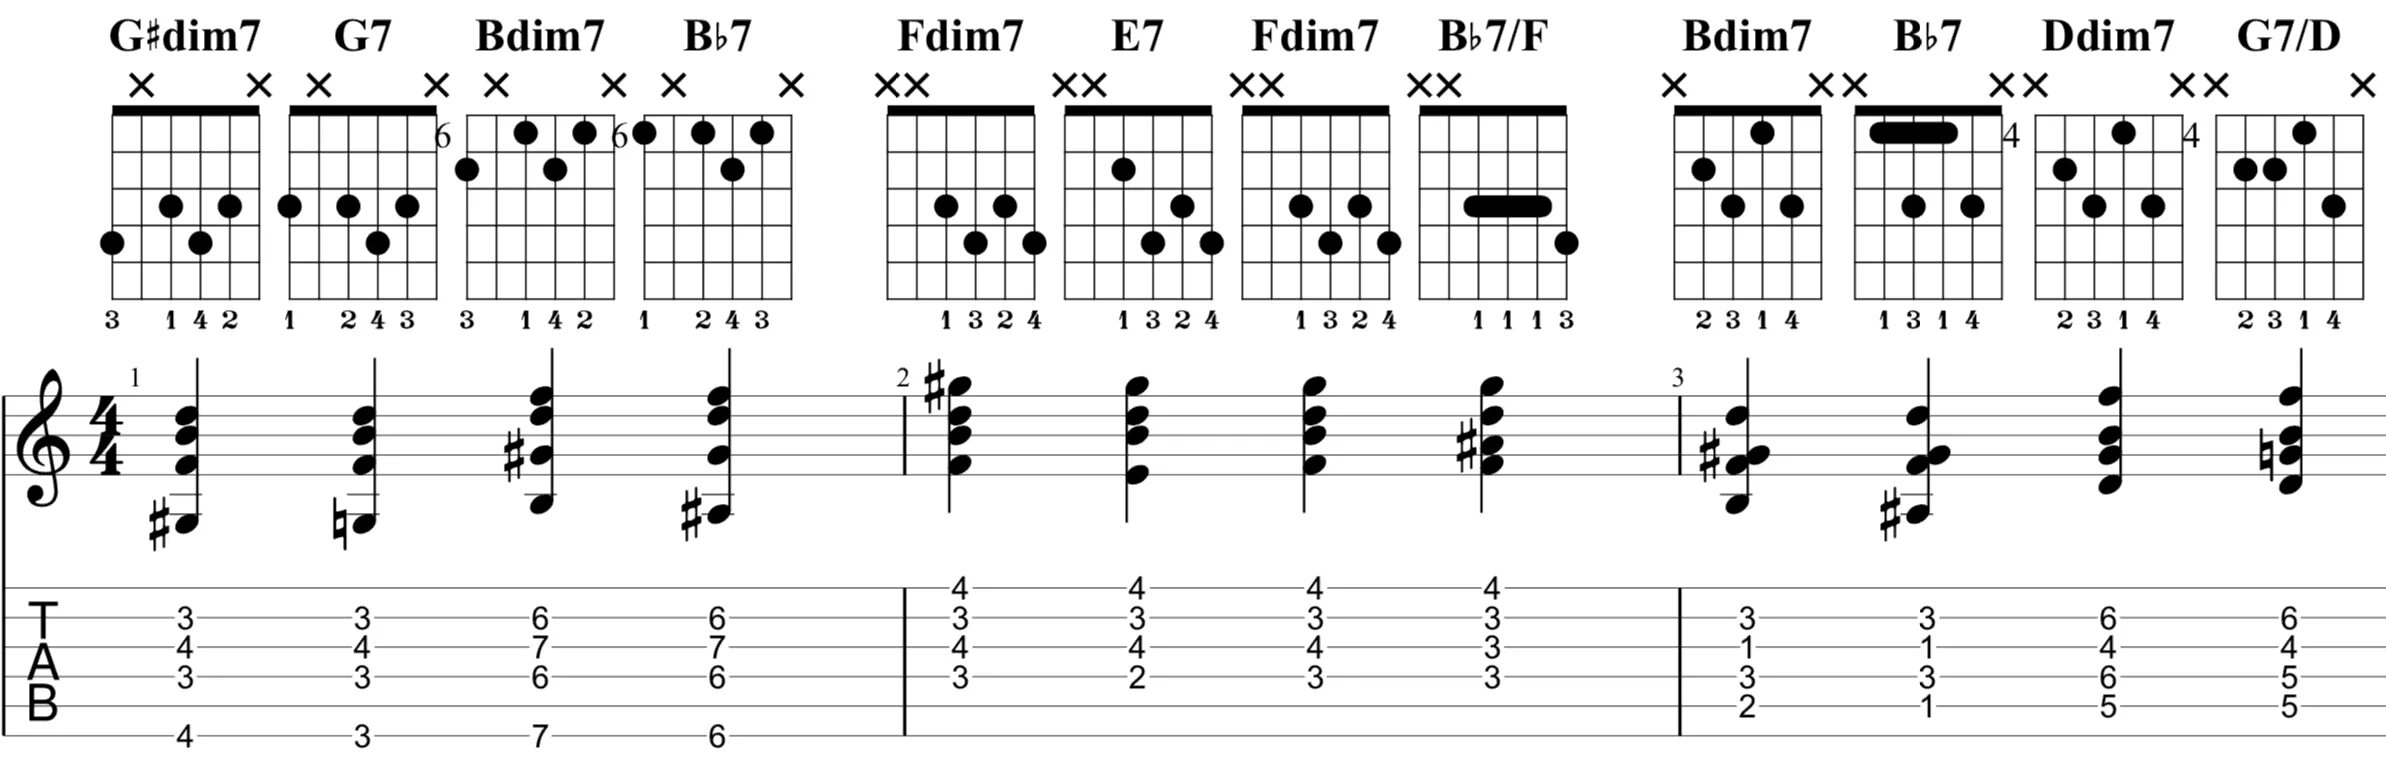 Bm7-5 Аккорд. F dim7 Аккорд. Dim Аккорд на гитаре. Bm7b5 Аккорд на гитаре. Гитара 7 ноты